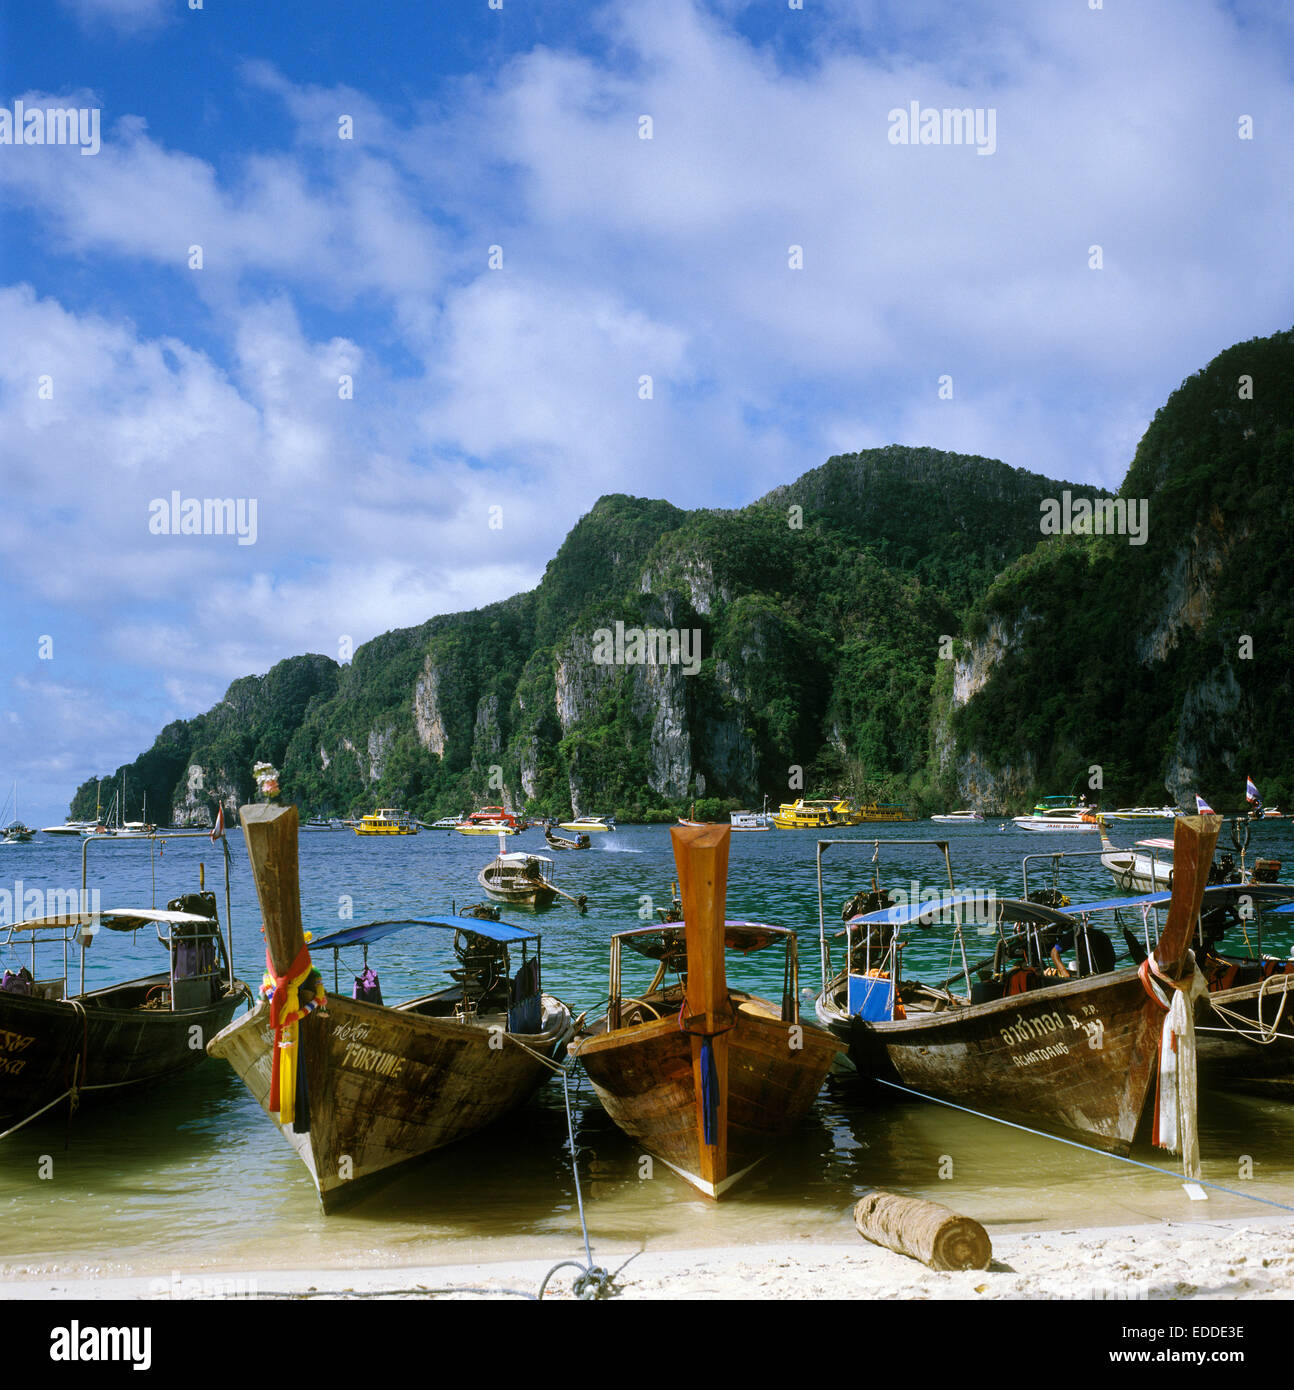 Boats on the beach, Ko Phi Phi Don, Thailand Stock Photo